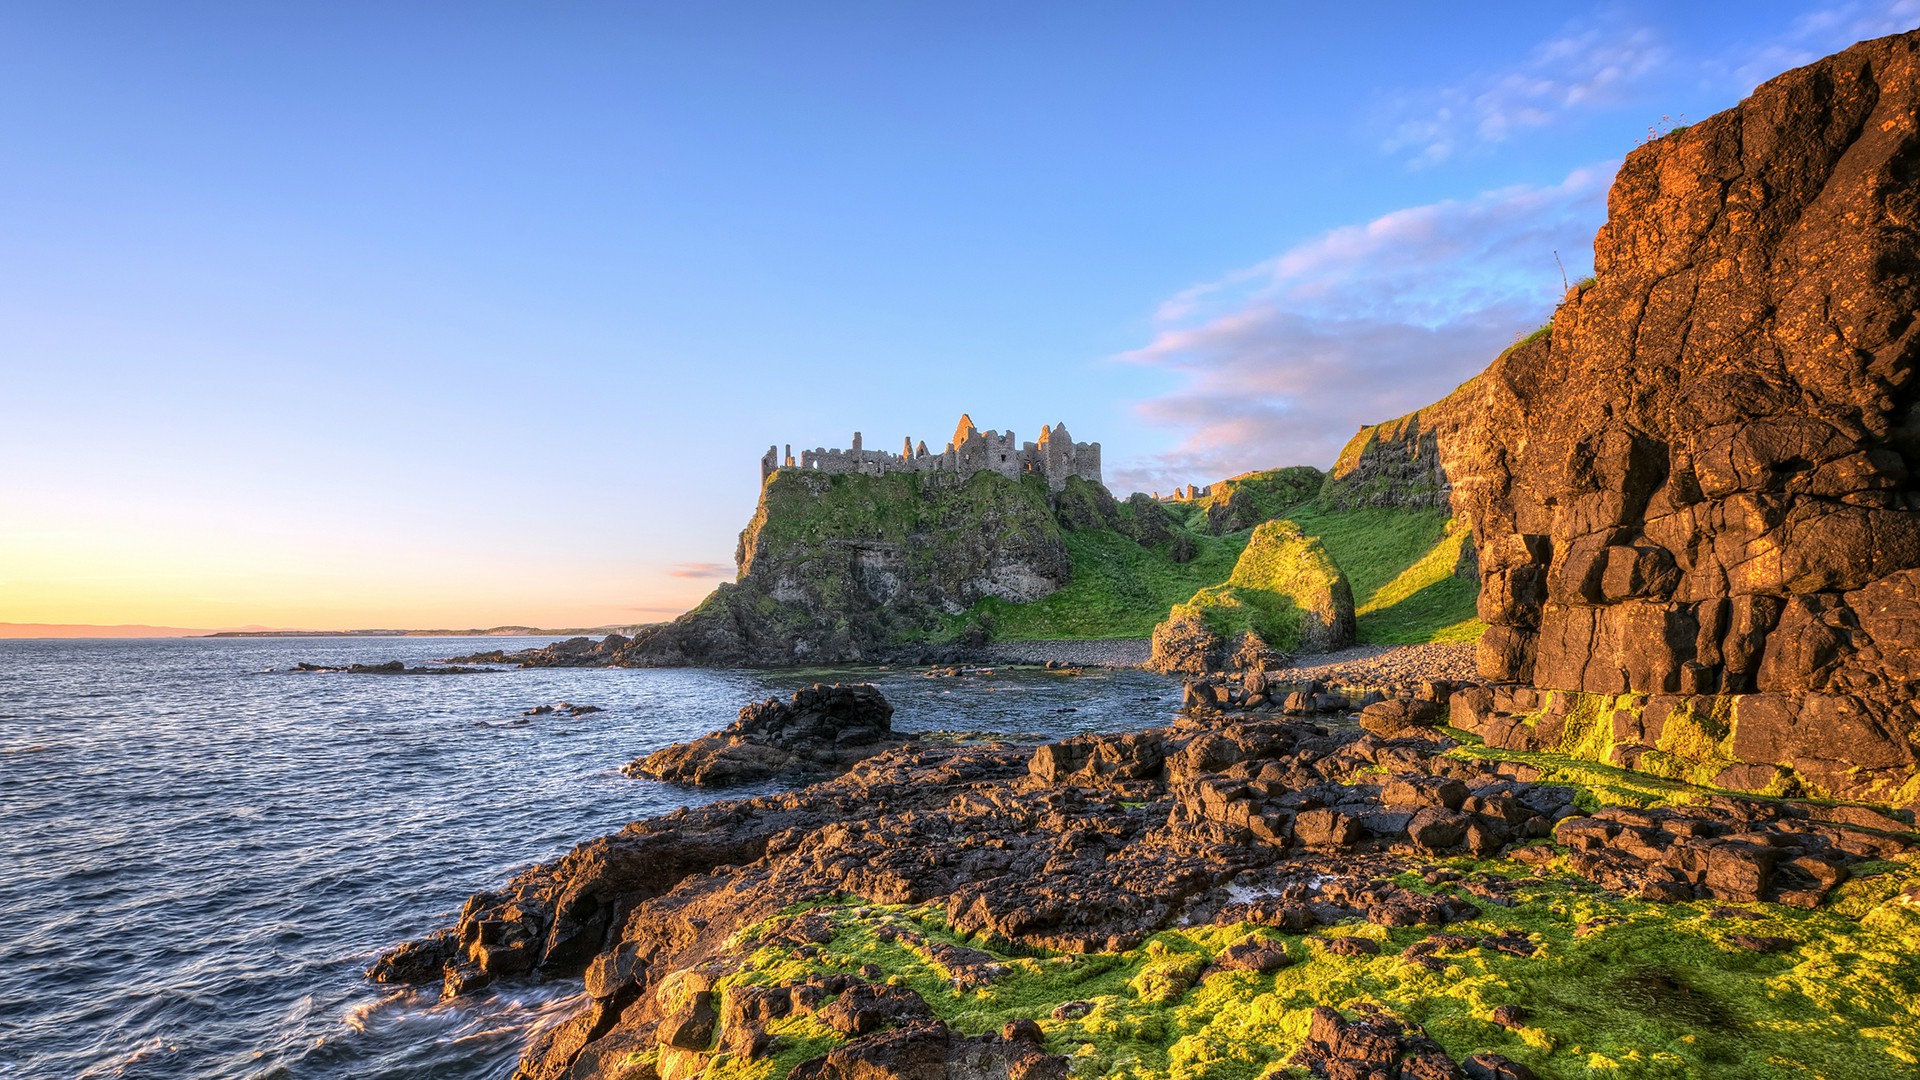 Khám phá sự tuyệt vời của thiên nhiên và phong cảnh đẹp nhất tại Ireland với bức ảnh này! Cảnh quan biển hoang sơ, vách đá độc đáo và đất đỏ đặc trưng tại đây sẽ khiến bạn bị thu hút. Hãy thưởng thức vẻ đẹp kiến trúc của các lâu đài và thăng hoa với sự hoàn hảo của thiên nhiên.